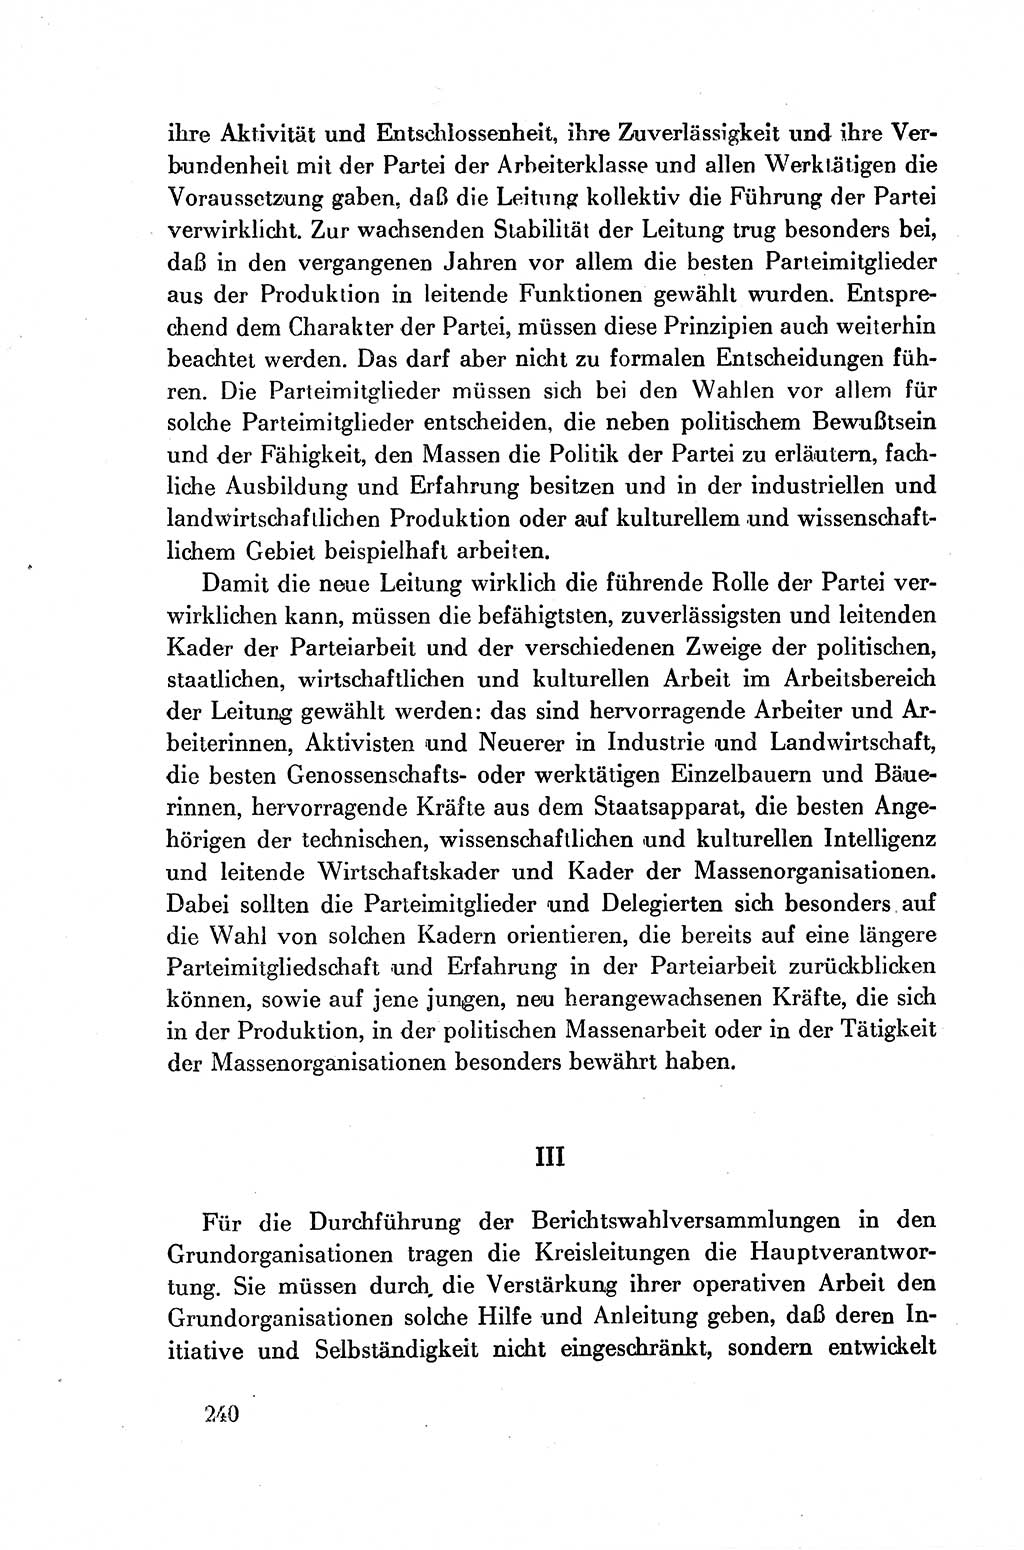 Dokumente der Sozialistischen Einheitspartei Deutschlands (SED) [Deutsche Demokratische Republik (DDR)] 1954-1955, Seite 240 (Dok. SED DDR 1954-1955, S. 240)